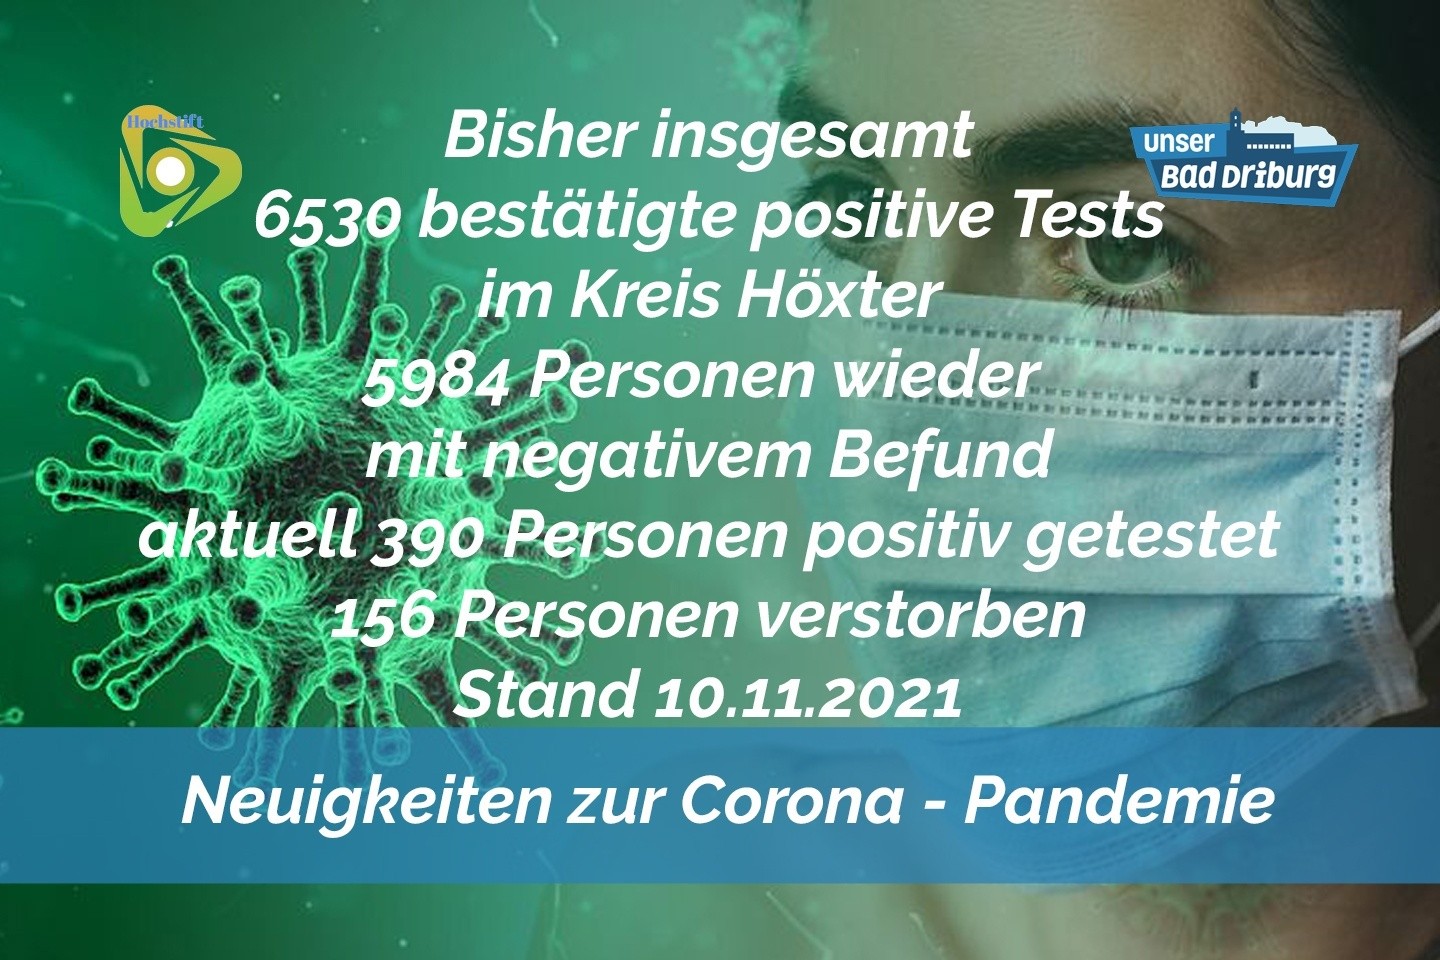 Update 10. November 2021: 47 weitere amtlich positive Tests im Kreis Höxter